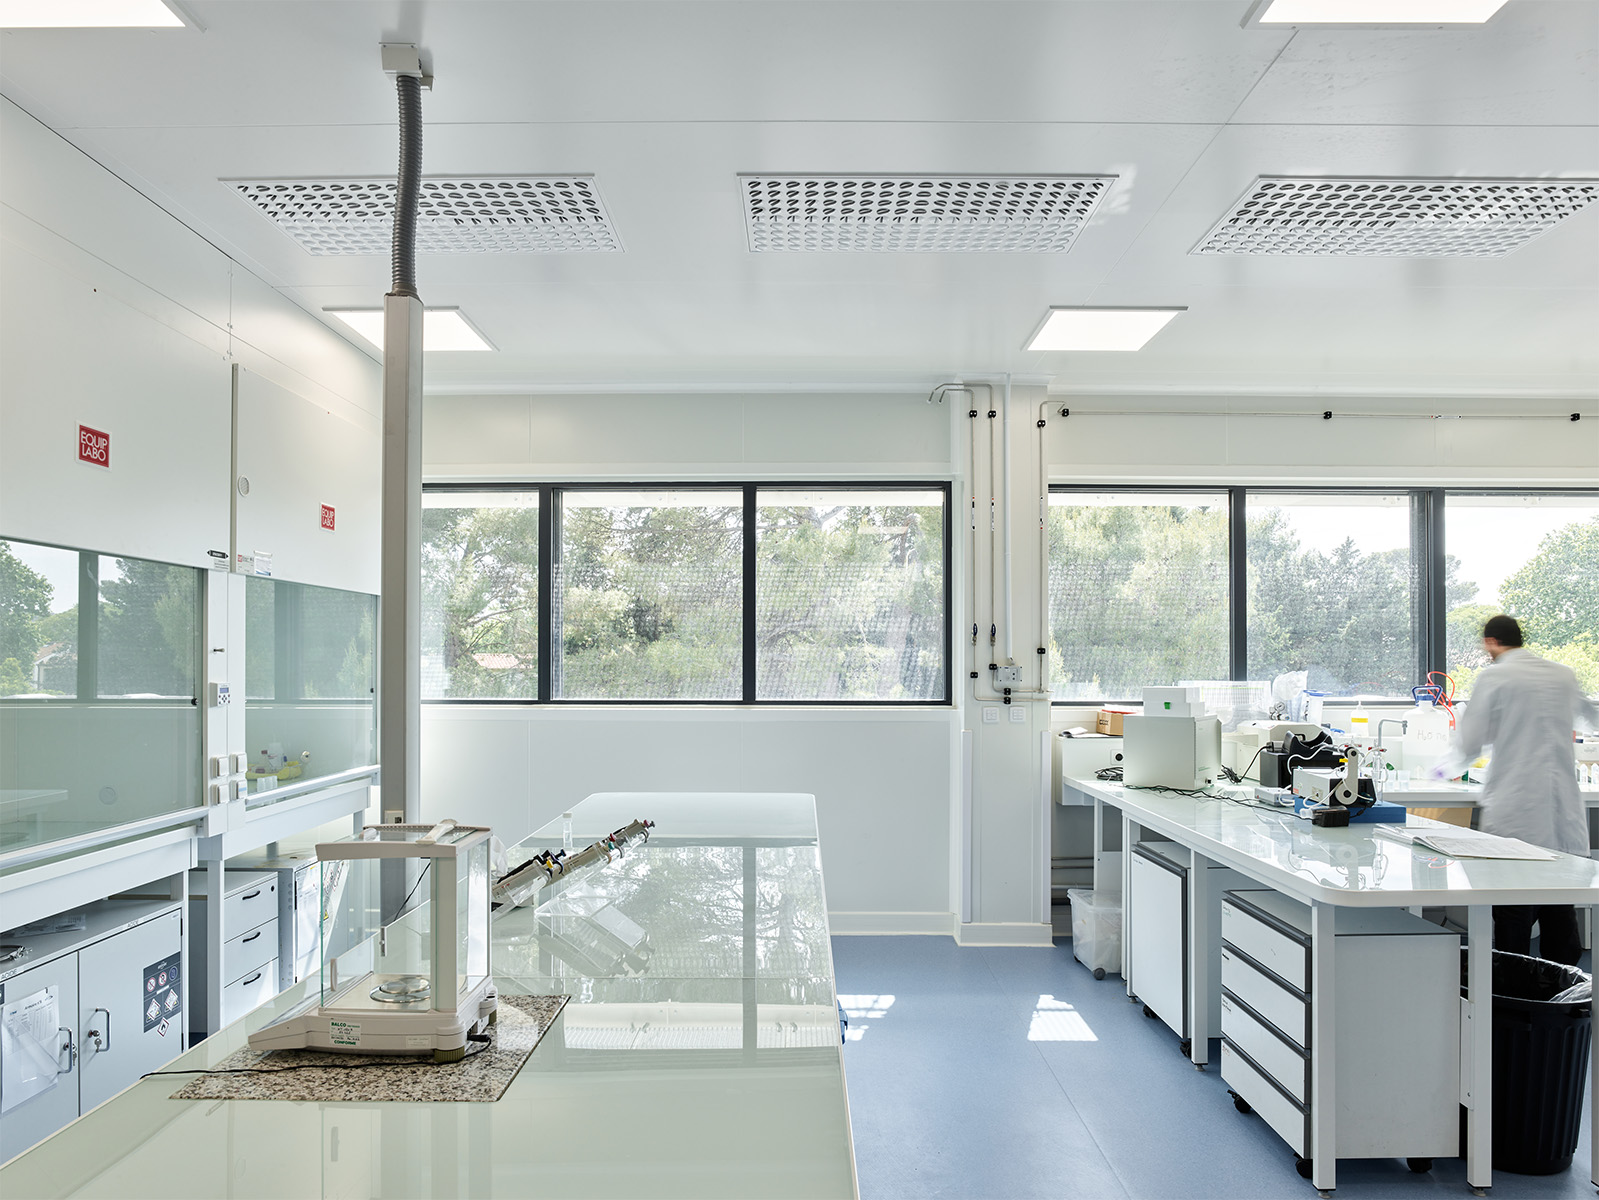 Photographie d'un laboratoire face aux fenêtres bandeaux qui apportent la végétation de la cours dans le laboratoire, une personne travaille à droite